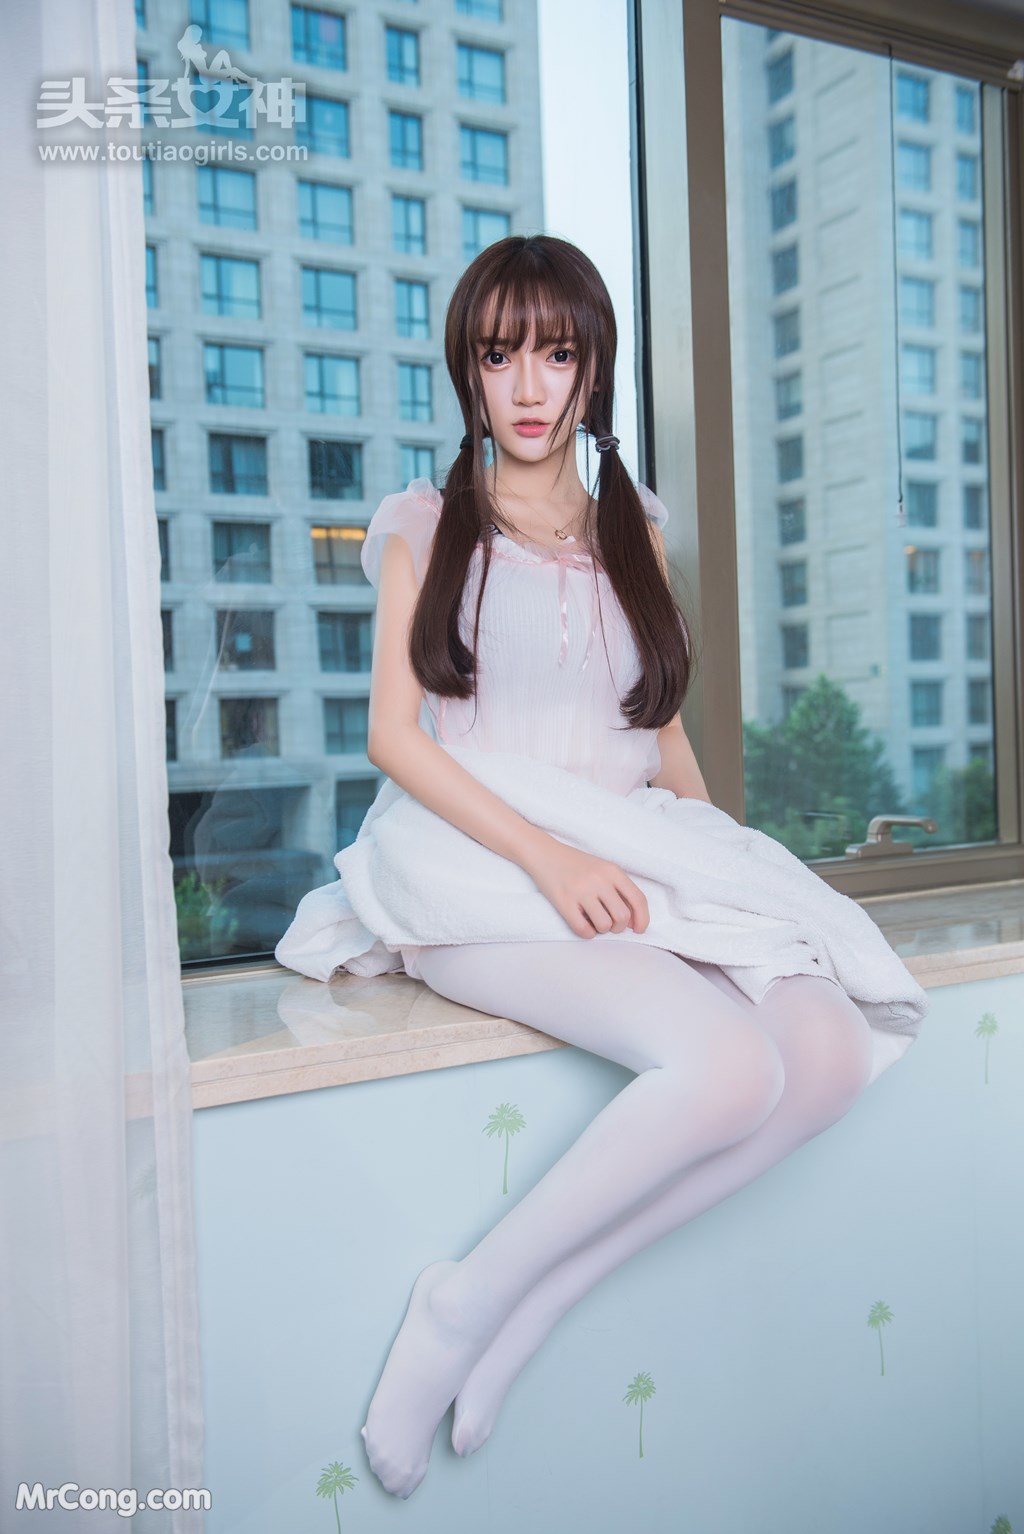 TouTiao 2017-08-11: Model Xiao Ru Jing (小 如 镜) (27 photos) photo 1-11